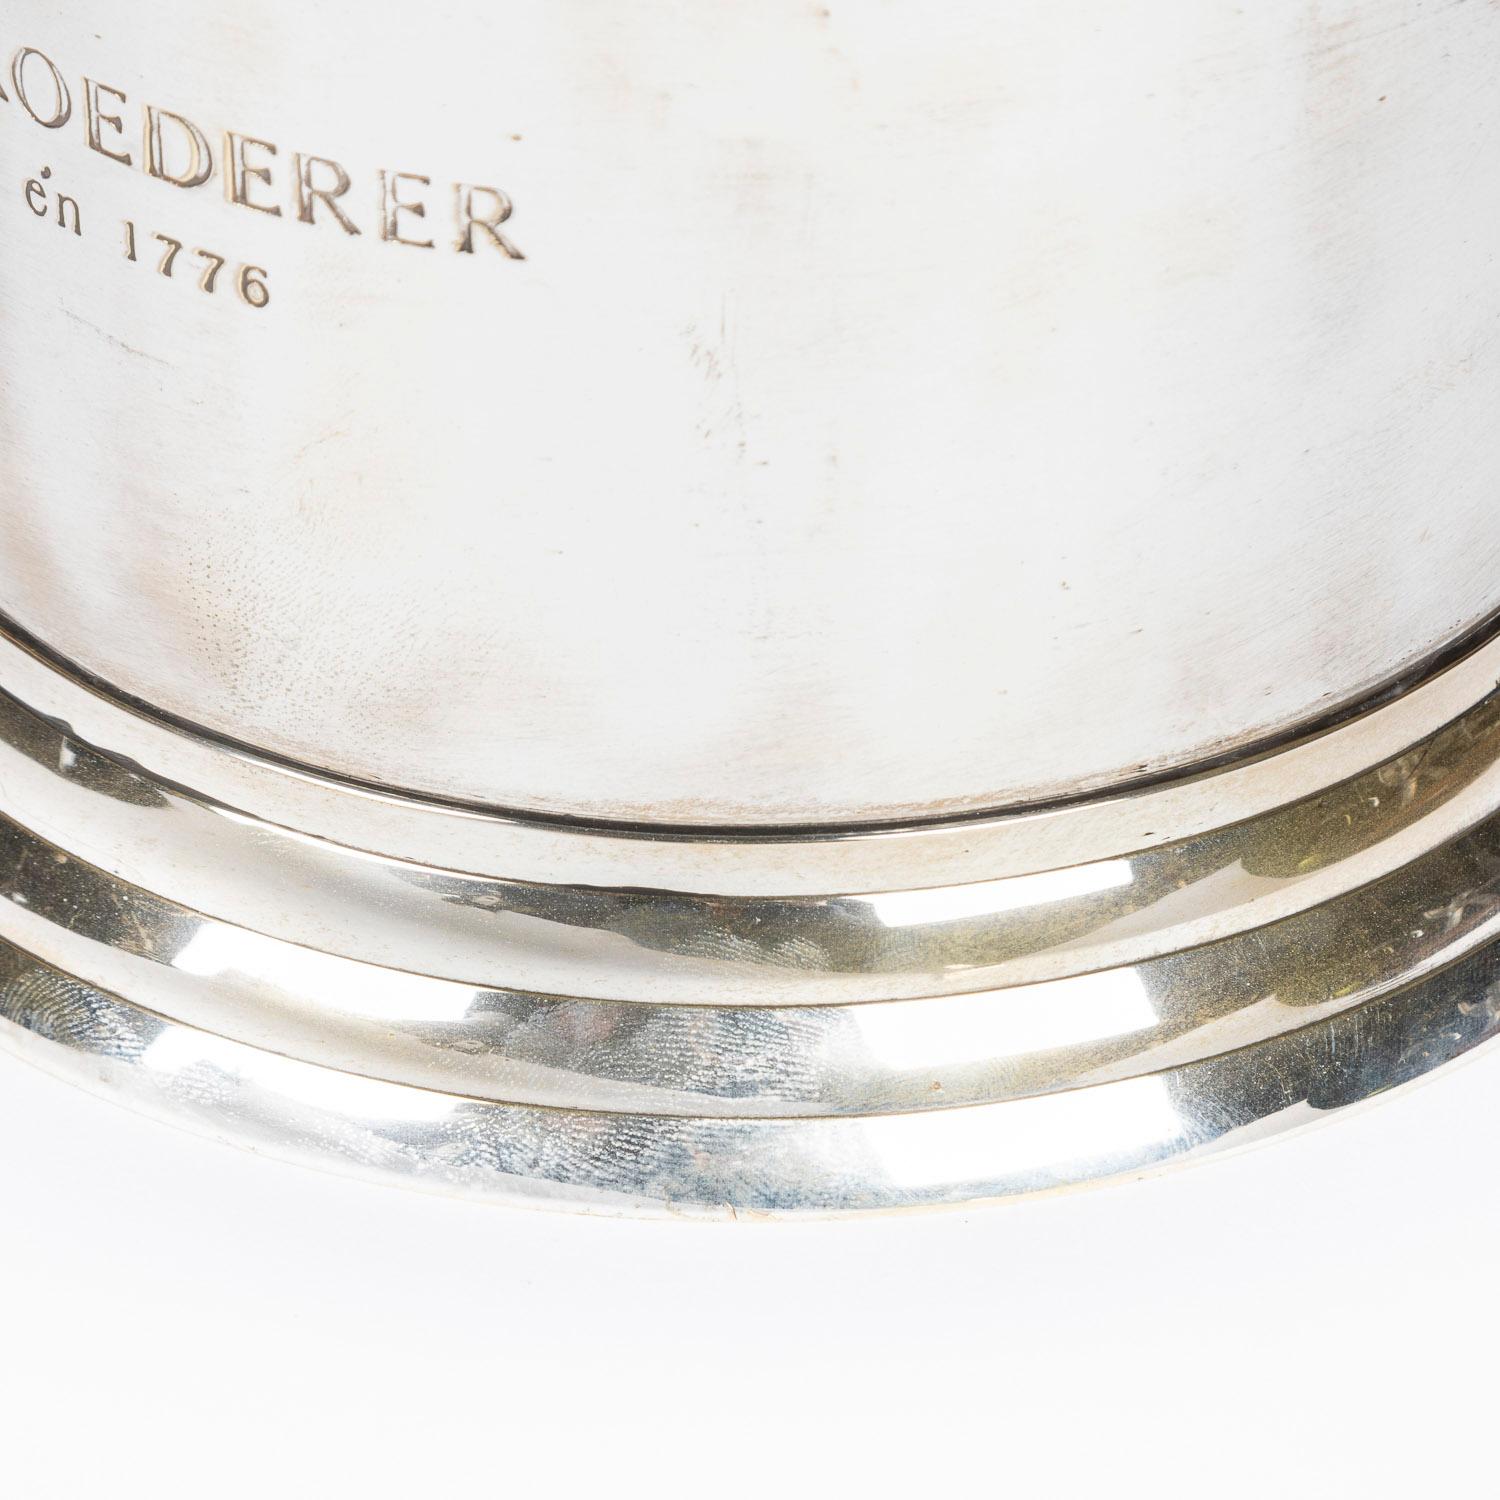 Versilberter Champagner-Eiskübel für Louis Roederer von James Deakin & Sons (20. Jahrhundert)